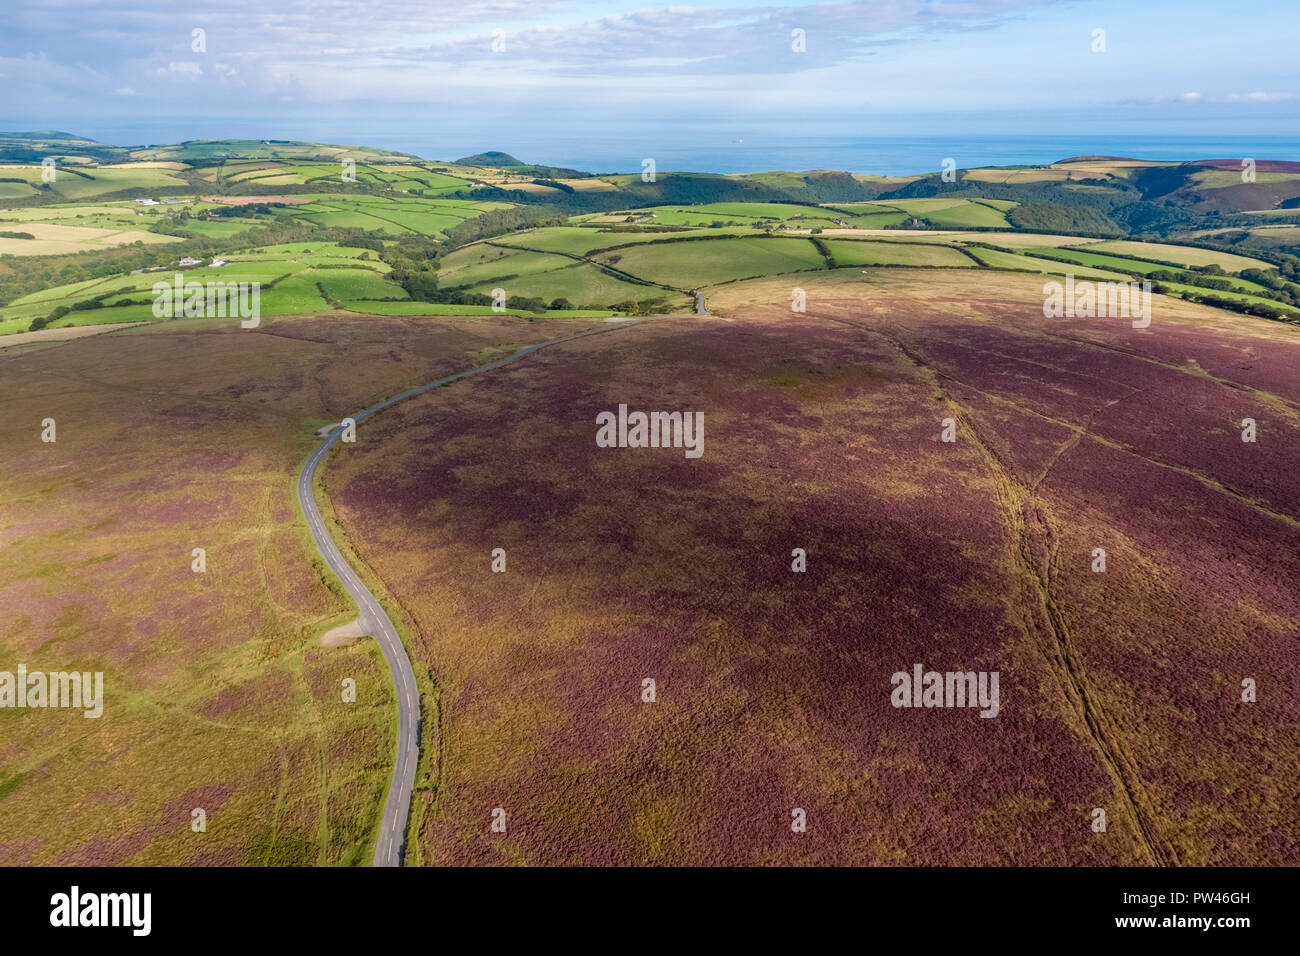 Reino Unido, Devon, Exmoor National Park, vista aérea a lo largo de los moros Foto de stock